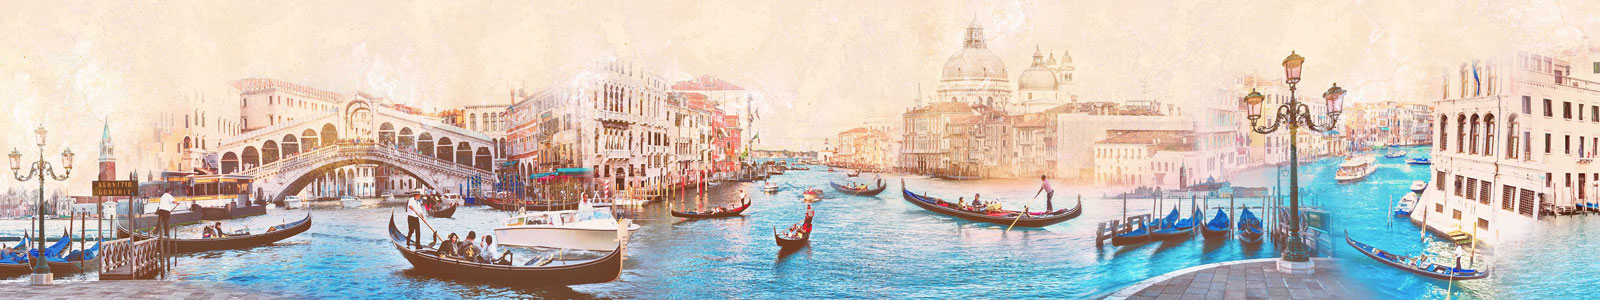 №5703 - Прогуляки на гондолах по винтажной Венеции